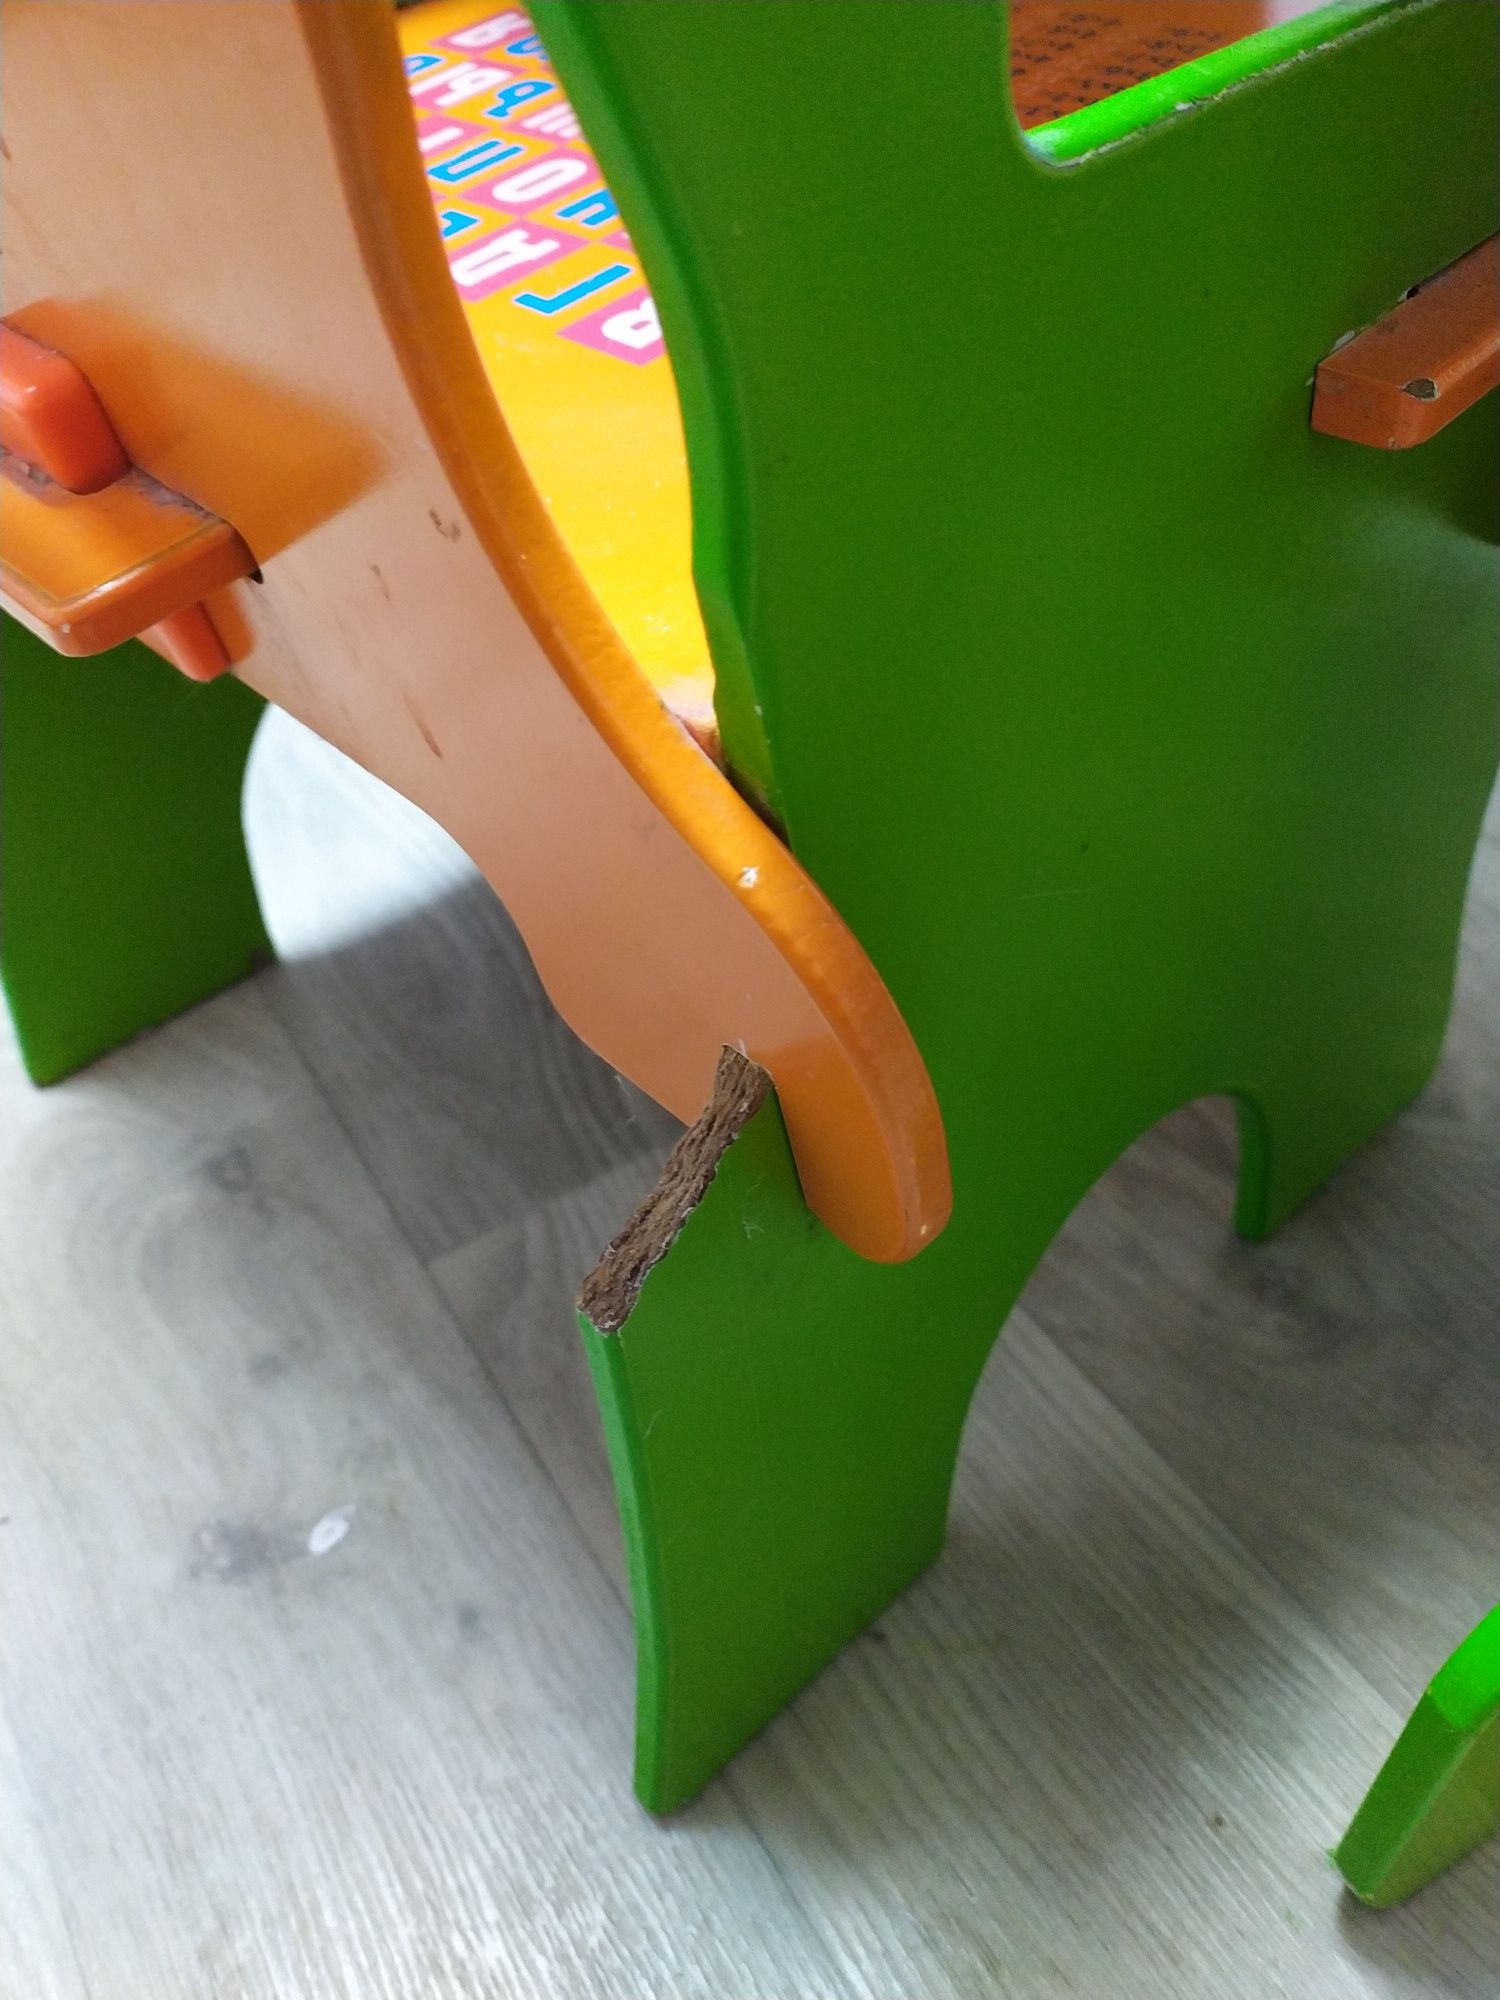 Дитячий стіл та стілець стільчик дерев'яні меблі для дітей дошкільного